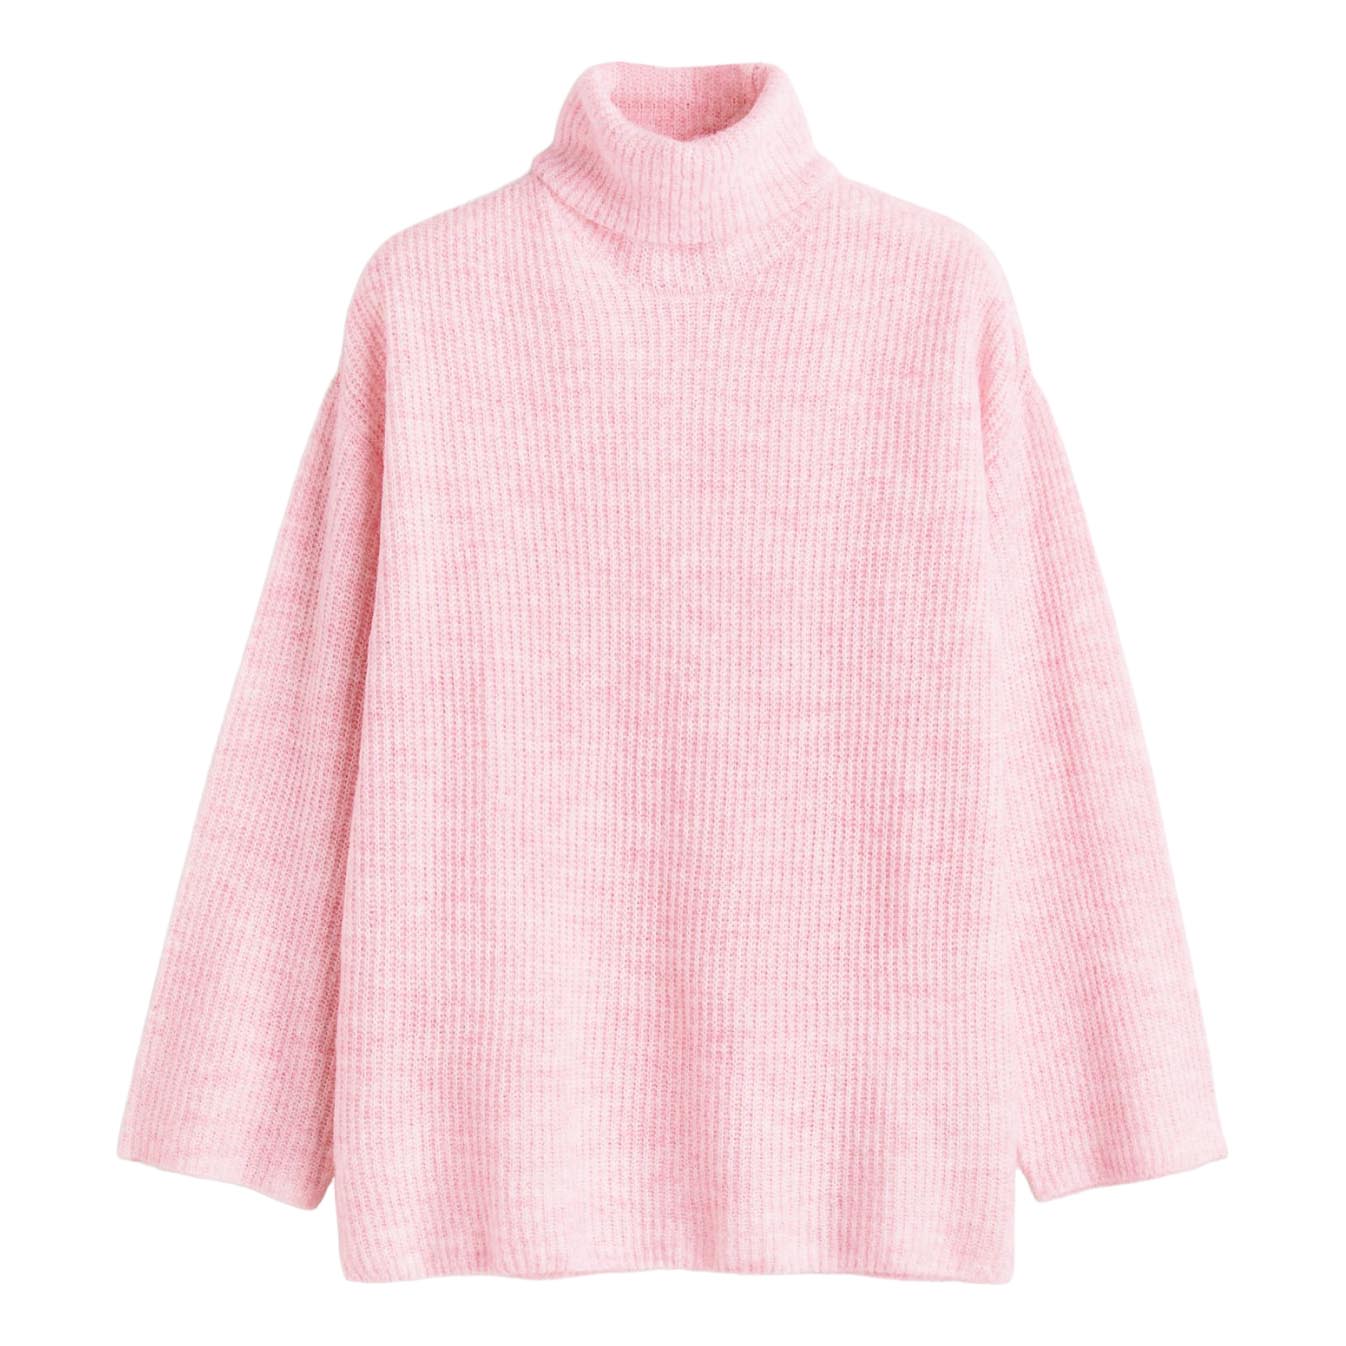 Свитер H&M Turtleneck, светло-розовый женский однобортный свитер розовый мягкий вязаный повседневный кардиган в корейском стиле y2k